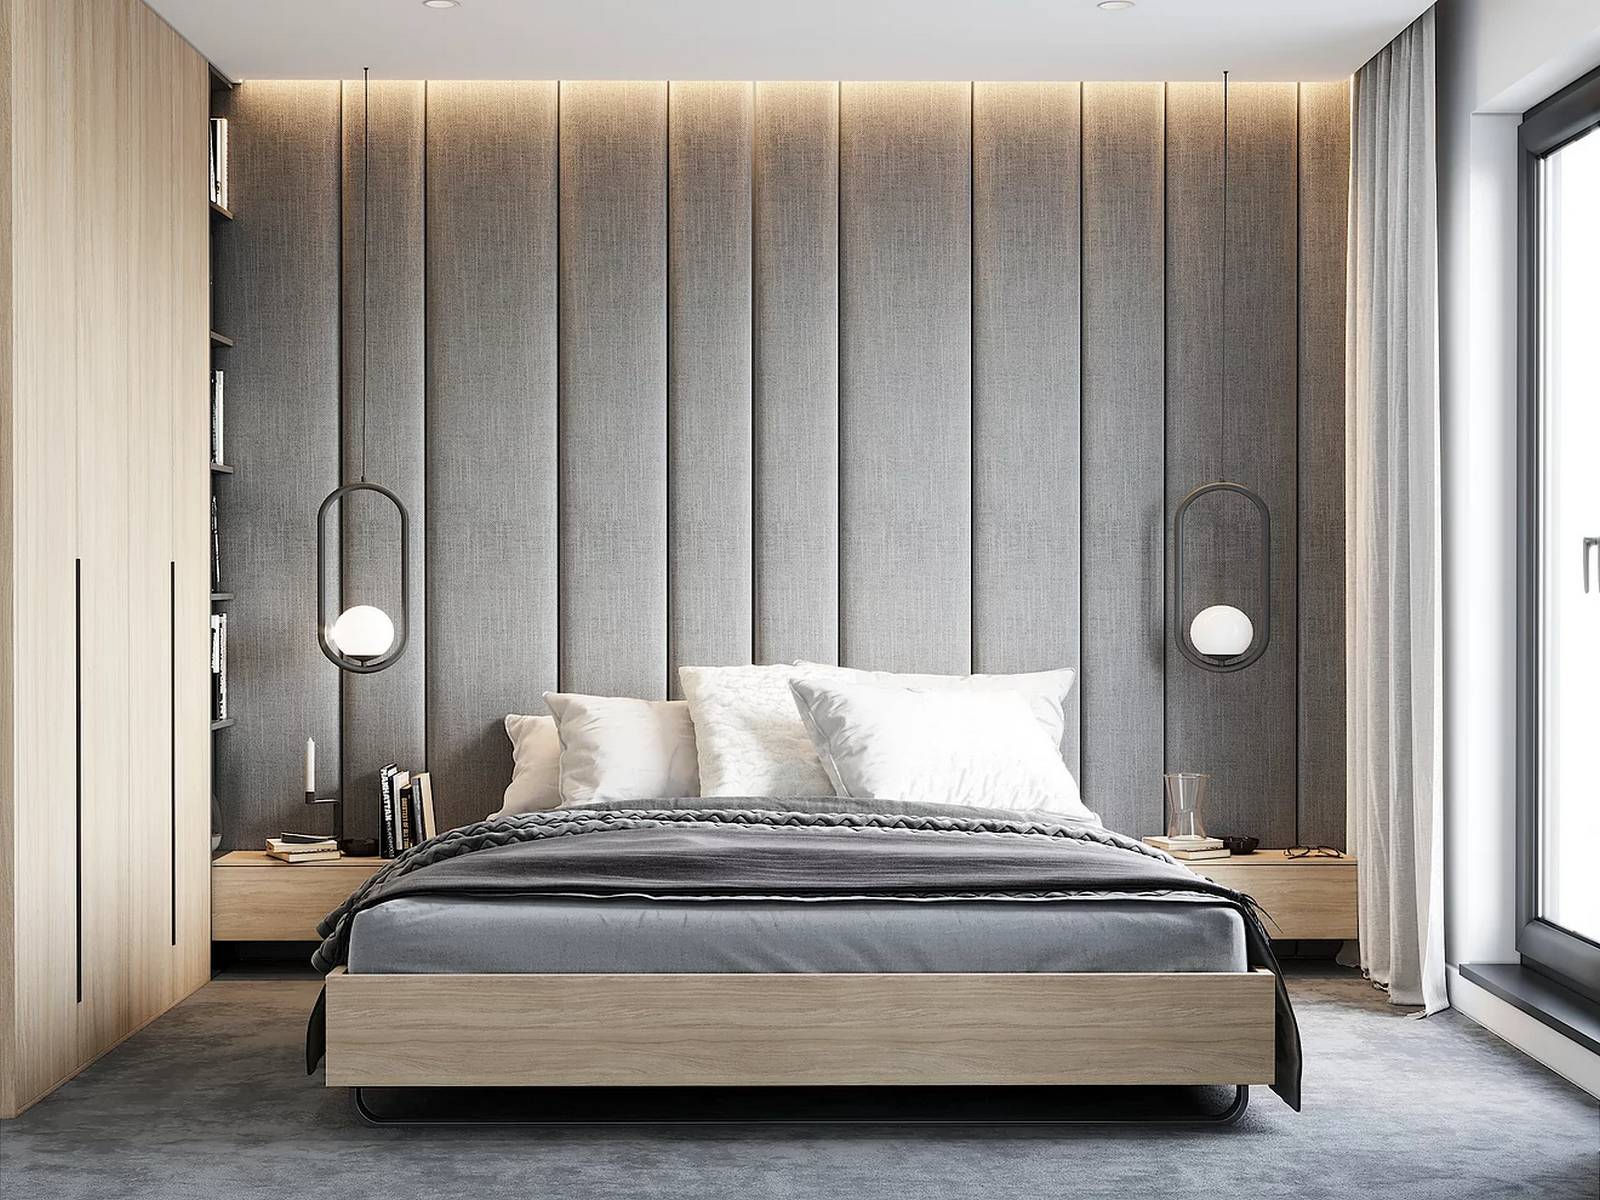 Hệ thống đèn LED âm trần cho phòng ngủ cái nhìn ấm áp, hai chiếc đèn thả độc đáo bố trí đối xứng nhau giống như táp đầu giường bằng gỗ nhỏ gọn. Bên trái chiếc giường là tủ lưu trữ cao và rộng rãi.